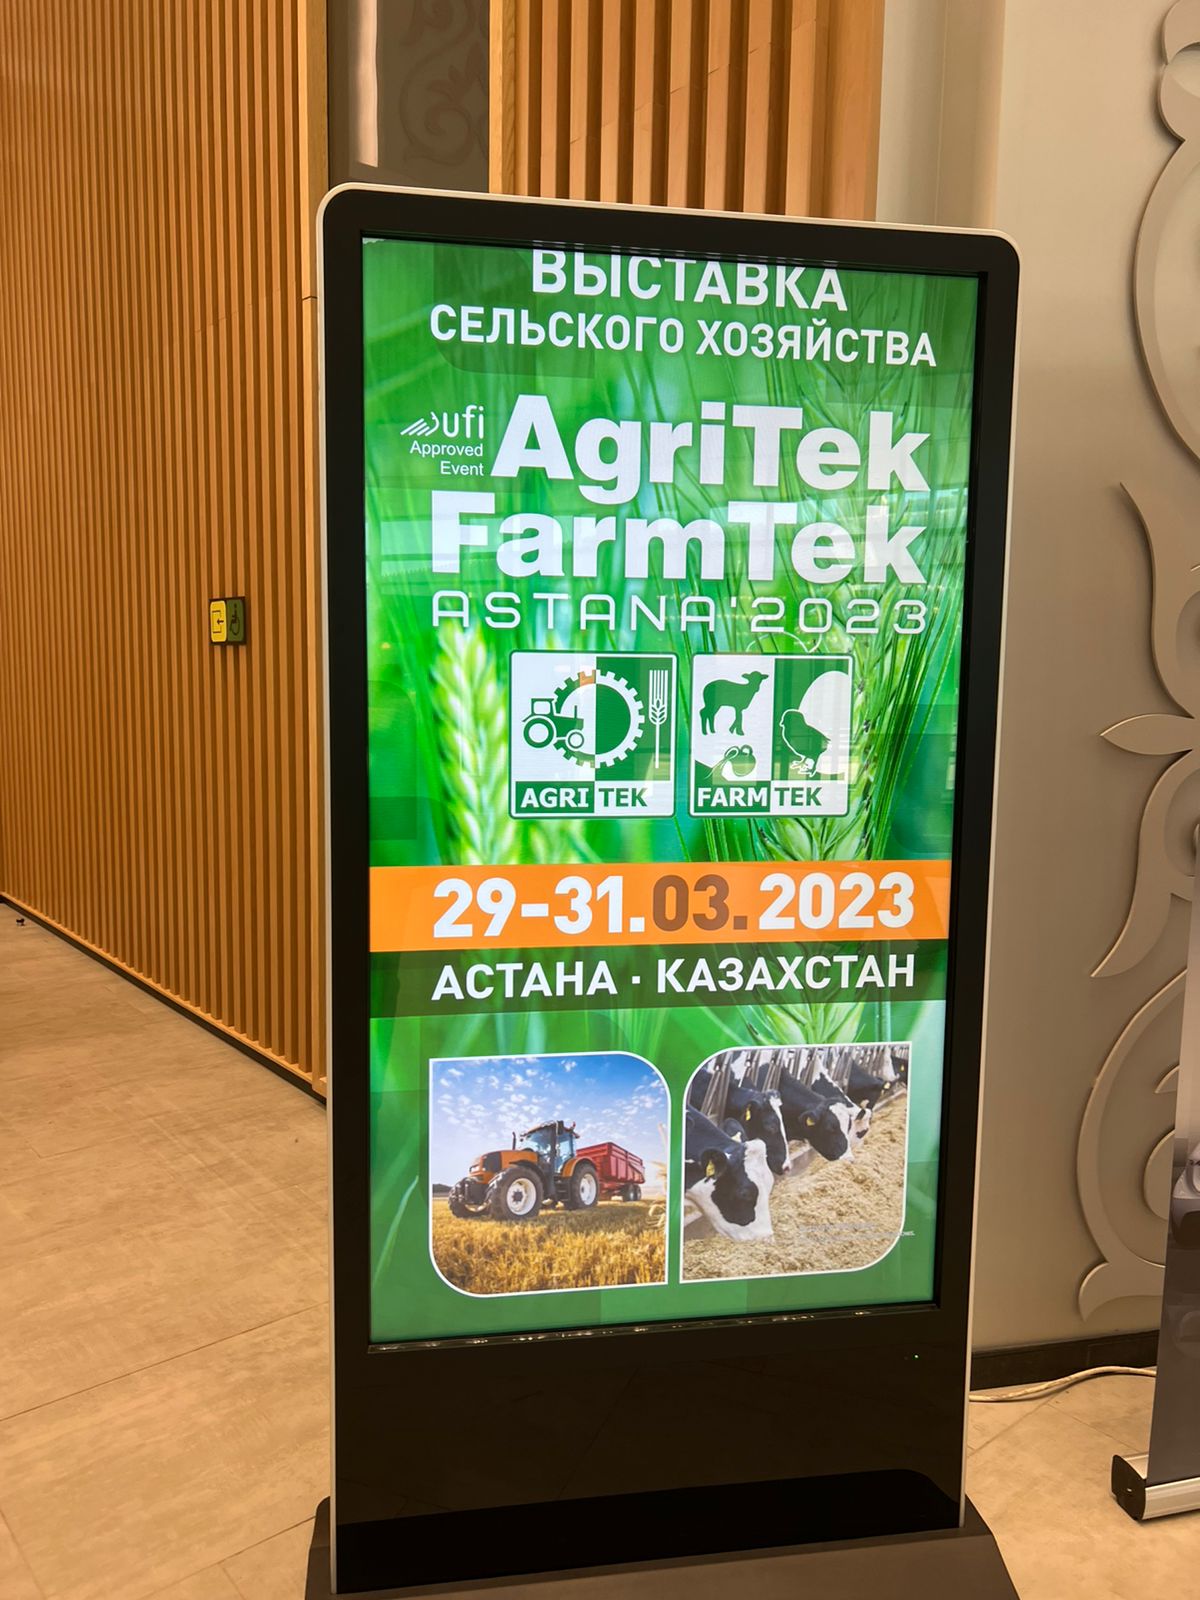 Компания «ЗемлякоФФ»  на выставке AgriTek/FarmTek Astana’2023 в Казахстане